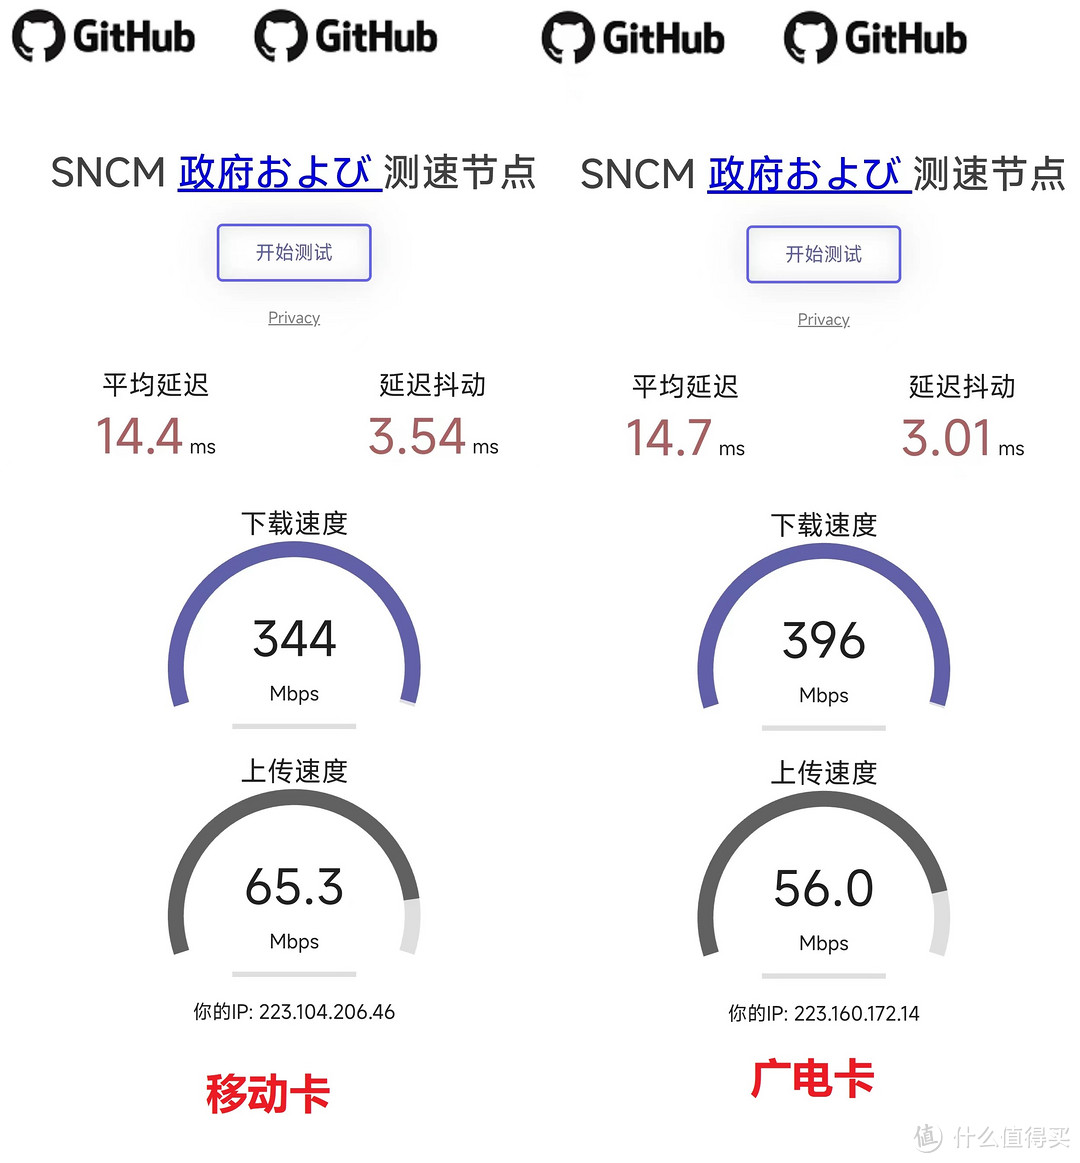 中国广电19元162G通用流量卡网络深度测评